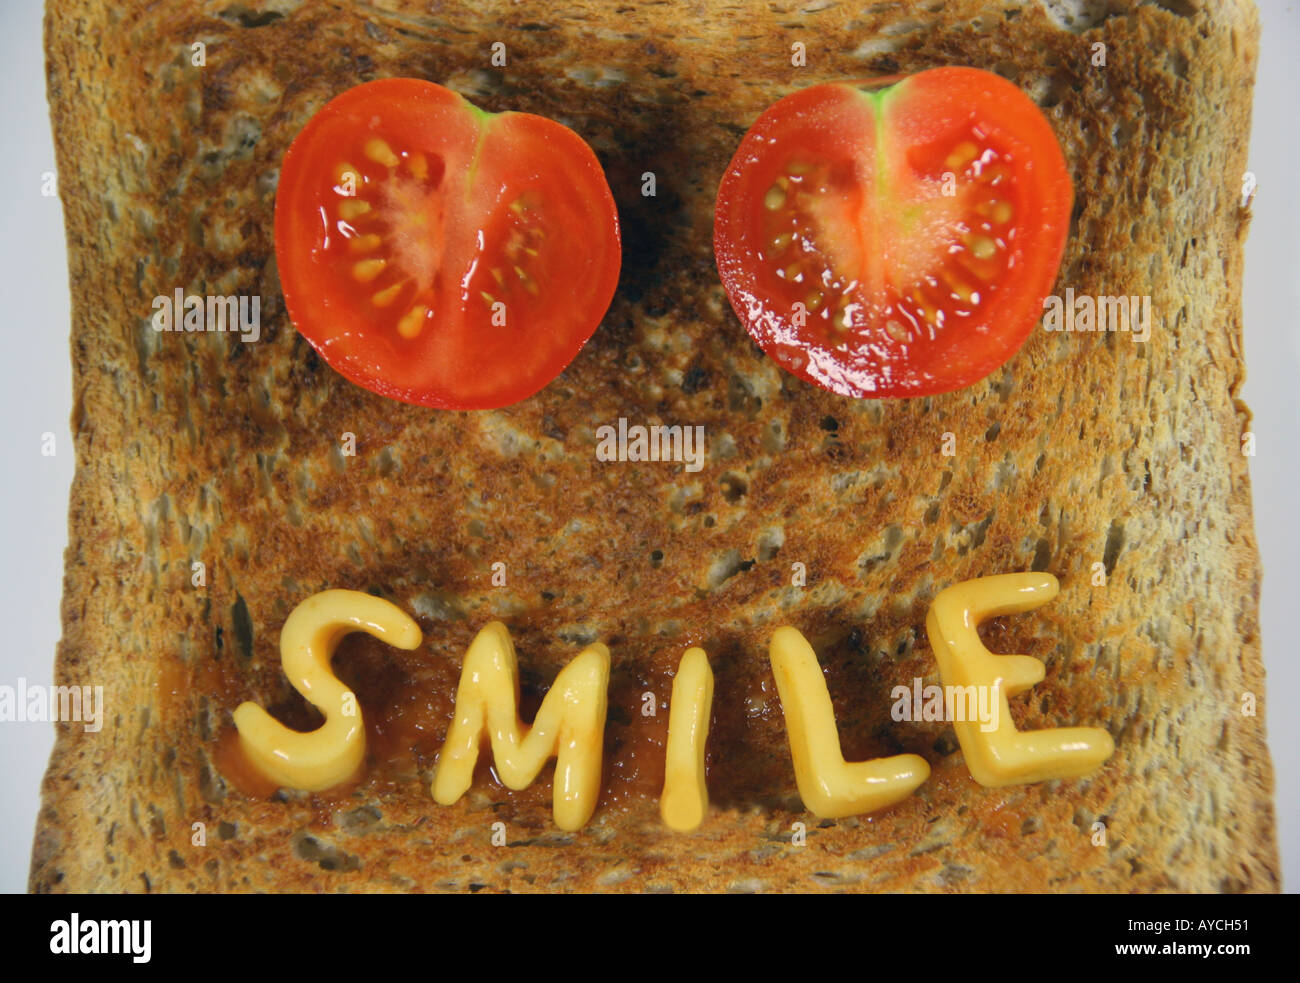 das Wort Lächeln auf Toast mit Alphabetti Spaghetti Nudelformen und zwei in Scheiben geschnittene Tomaten als Augen geschrieben Stockfoto